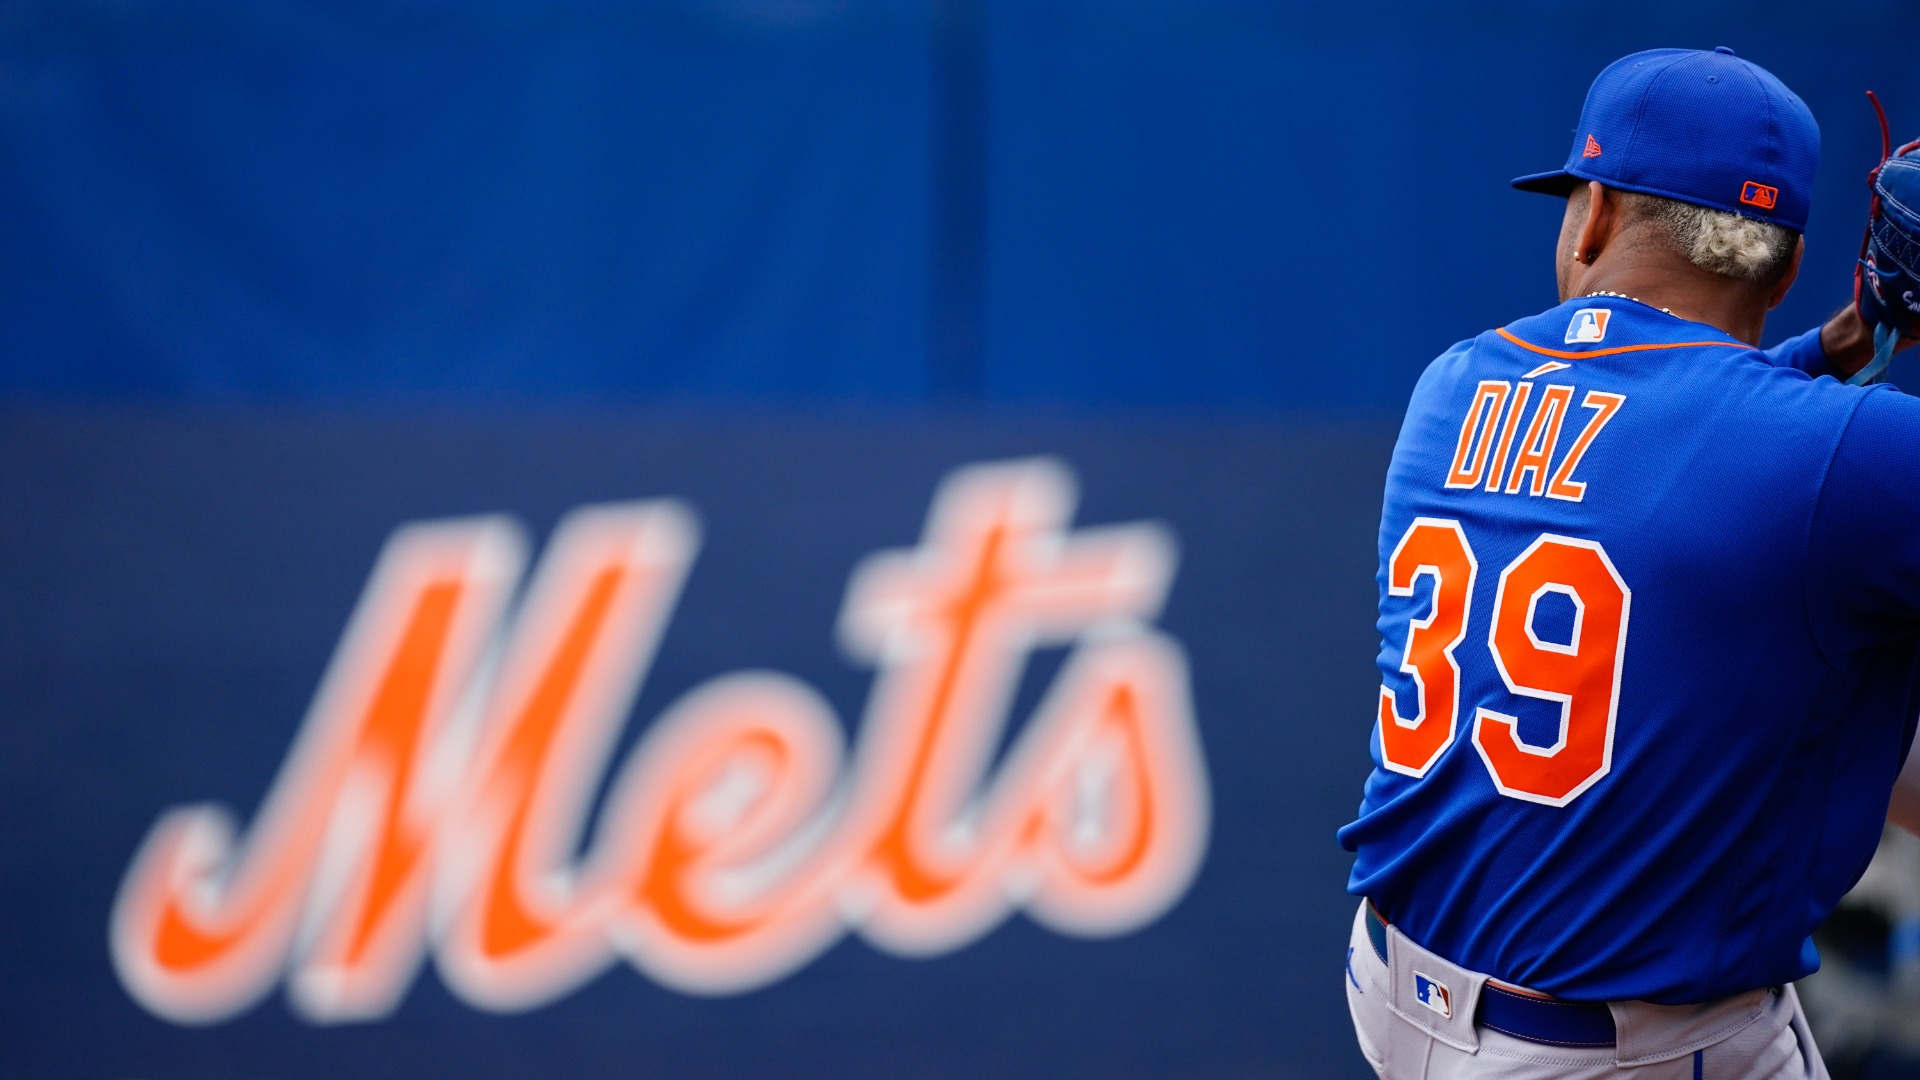 MLB rumors: Mets' Edwin Diaz eyes return from knee injury in 2023